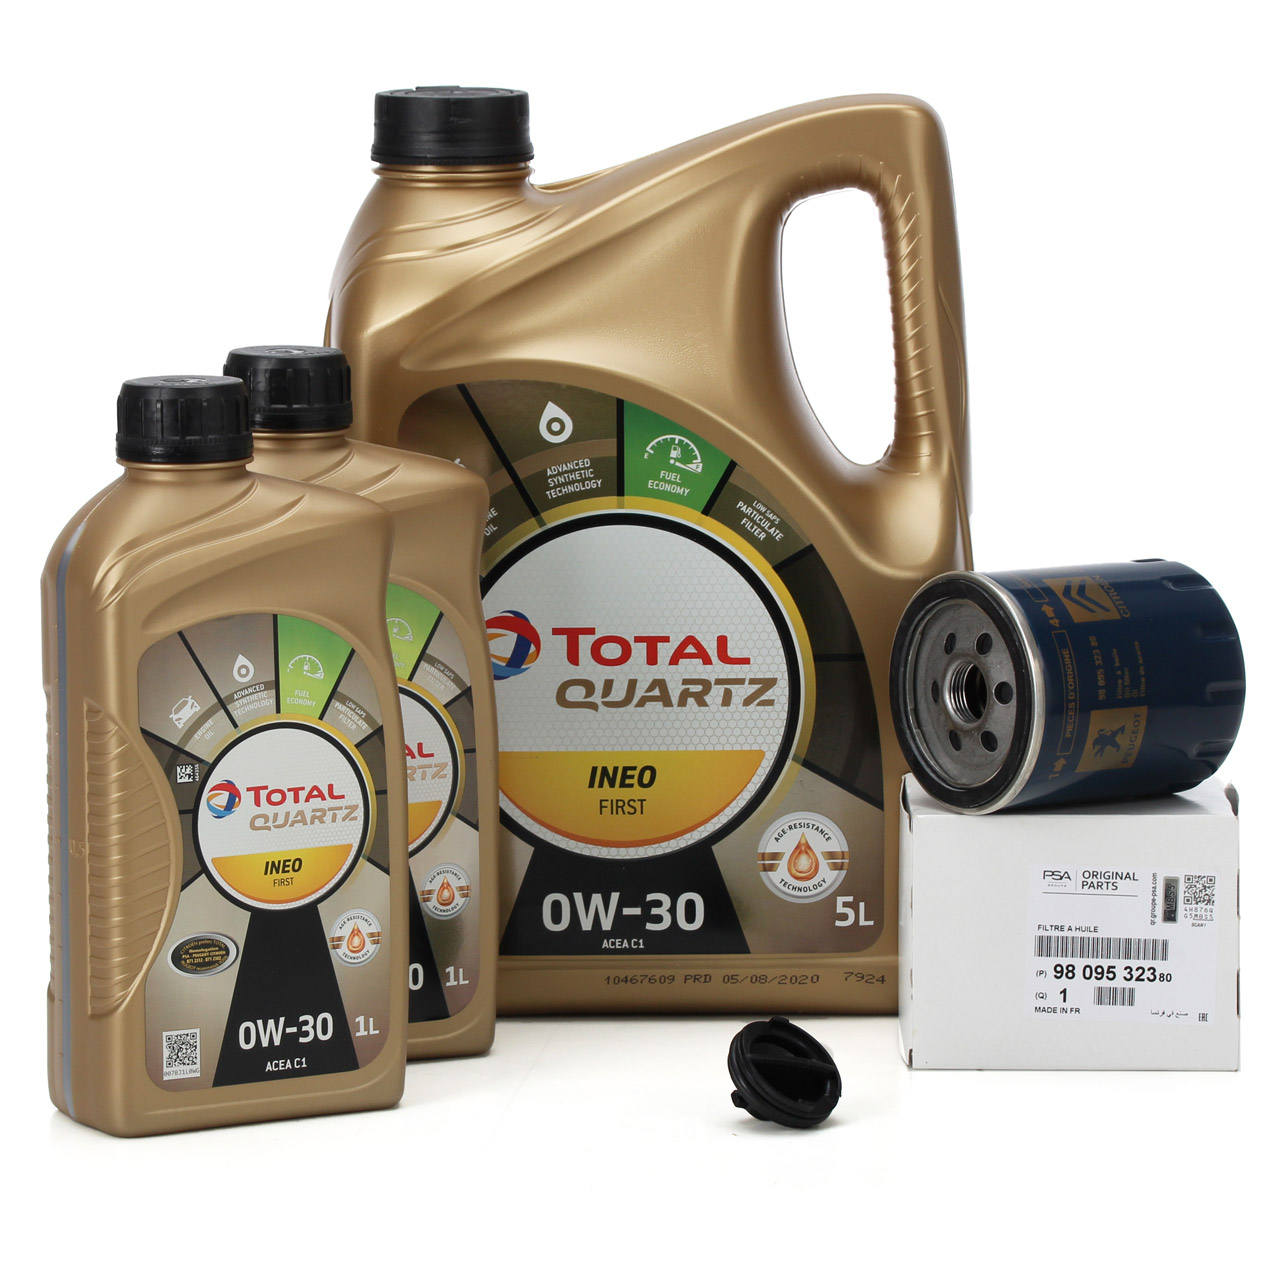 7L TOTAL QUARTZ INEO FIRST Motoröl Öl 0W30 + ORIGINAL PSA Opel Ölfilter 9809532380